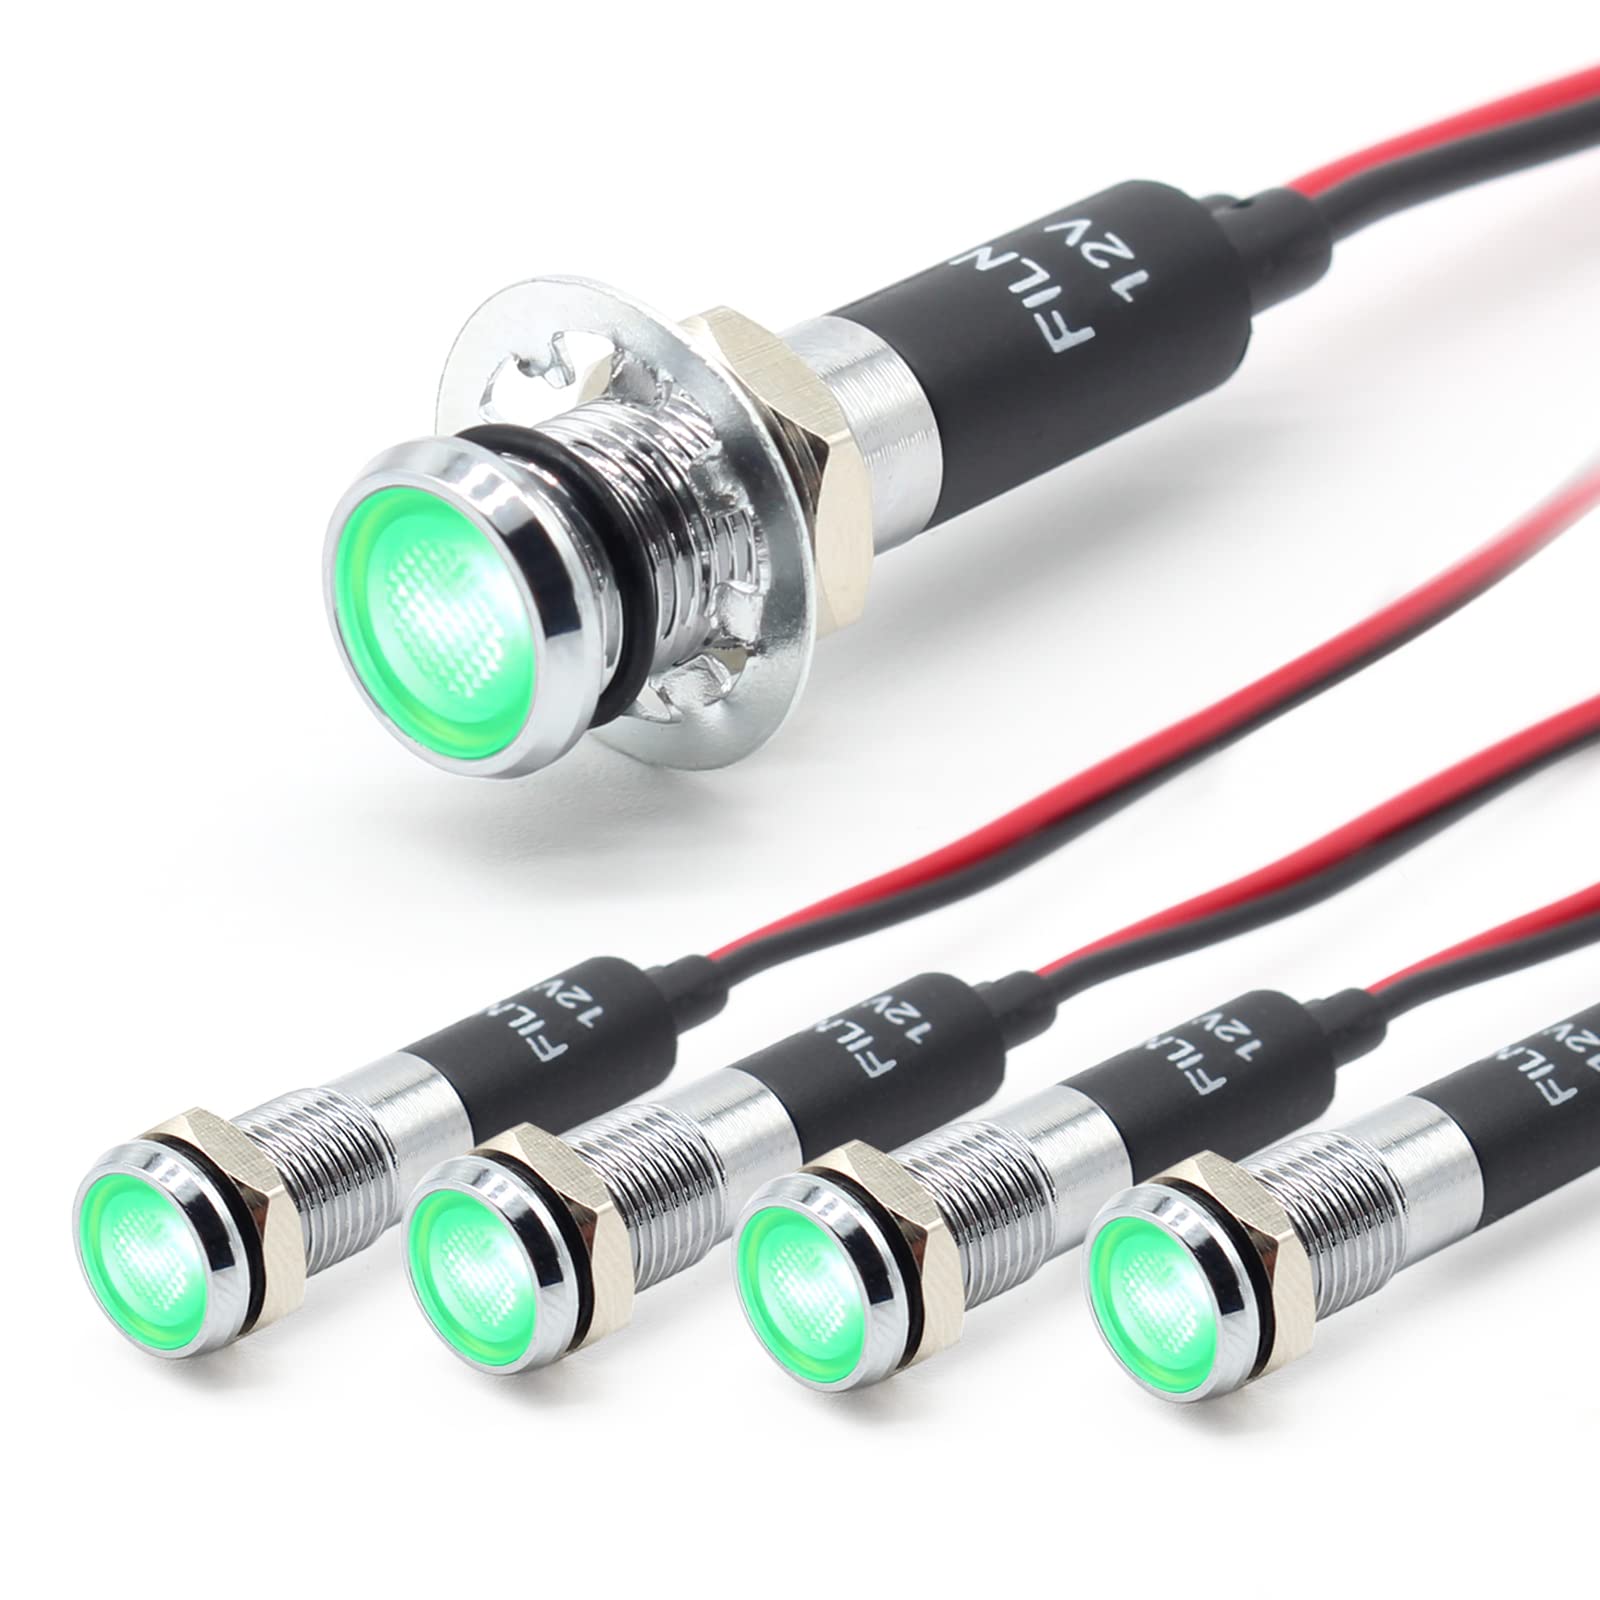 FILN 5 stücke 8mm (5/16 ") 12V LED kontrollleuchte wasserdichte pilot signallampe Meldeleuchte metalltafelleuchten(Messing vernickelt,grün5stück) von FILN